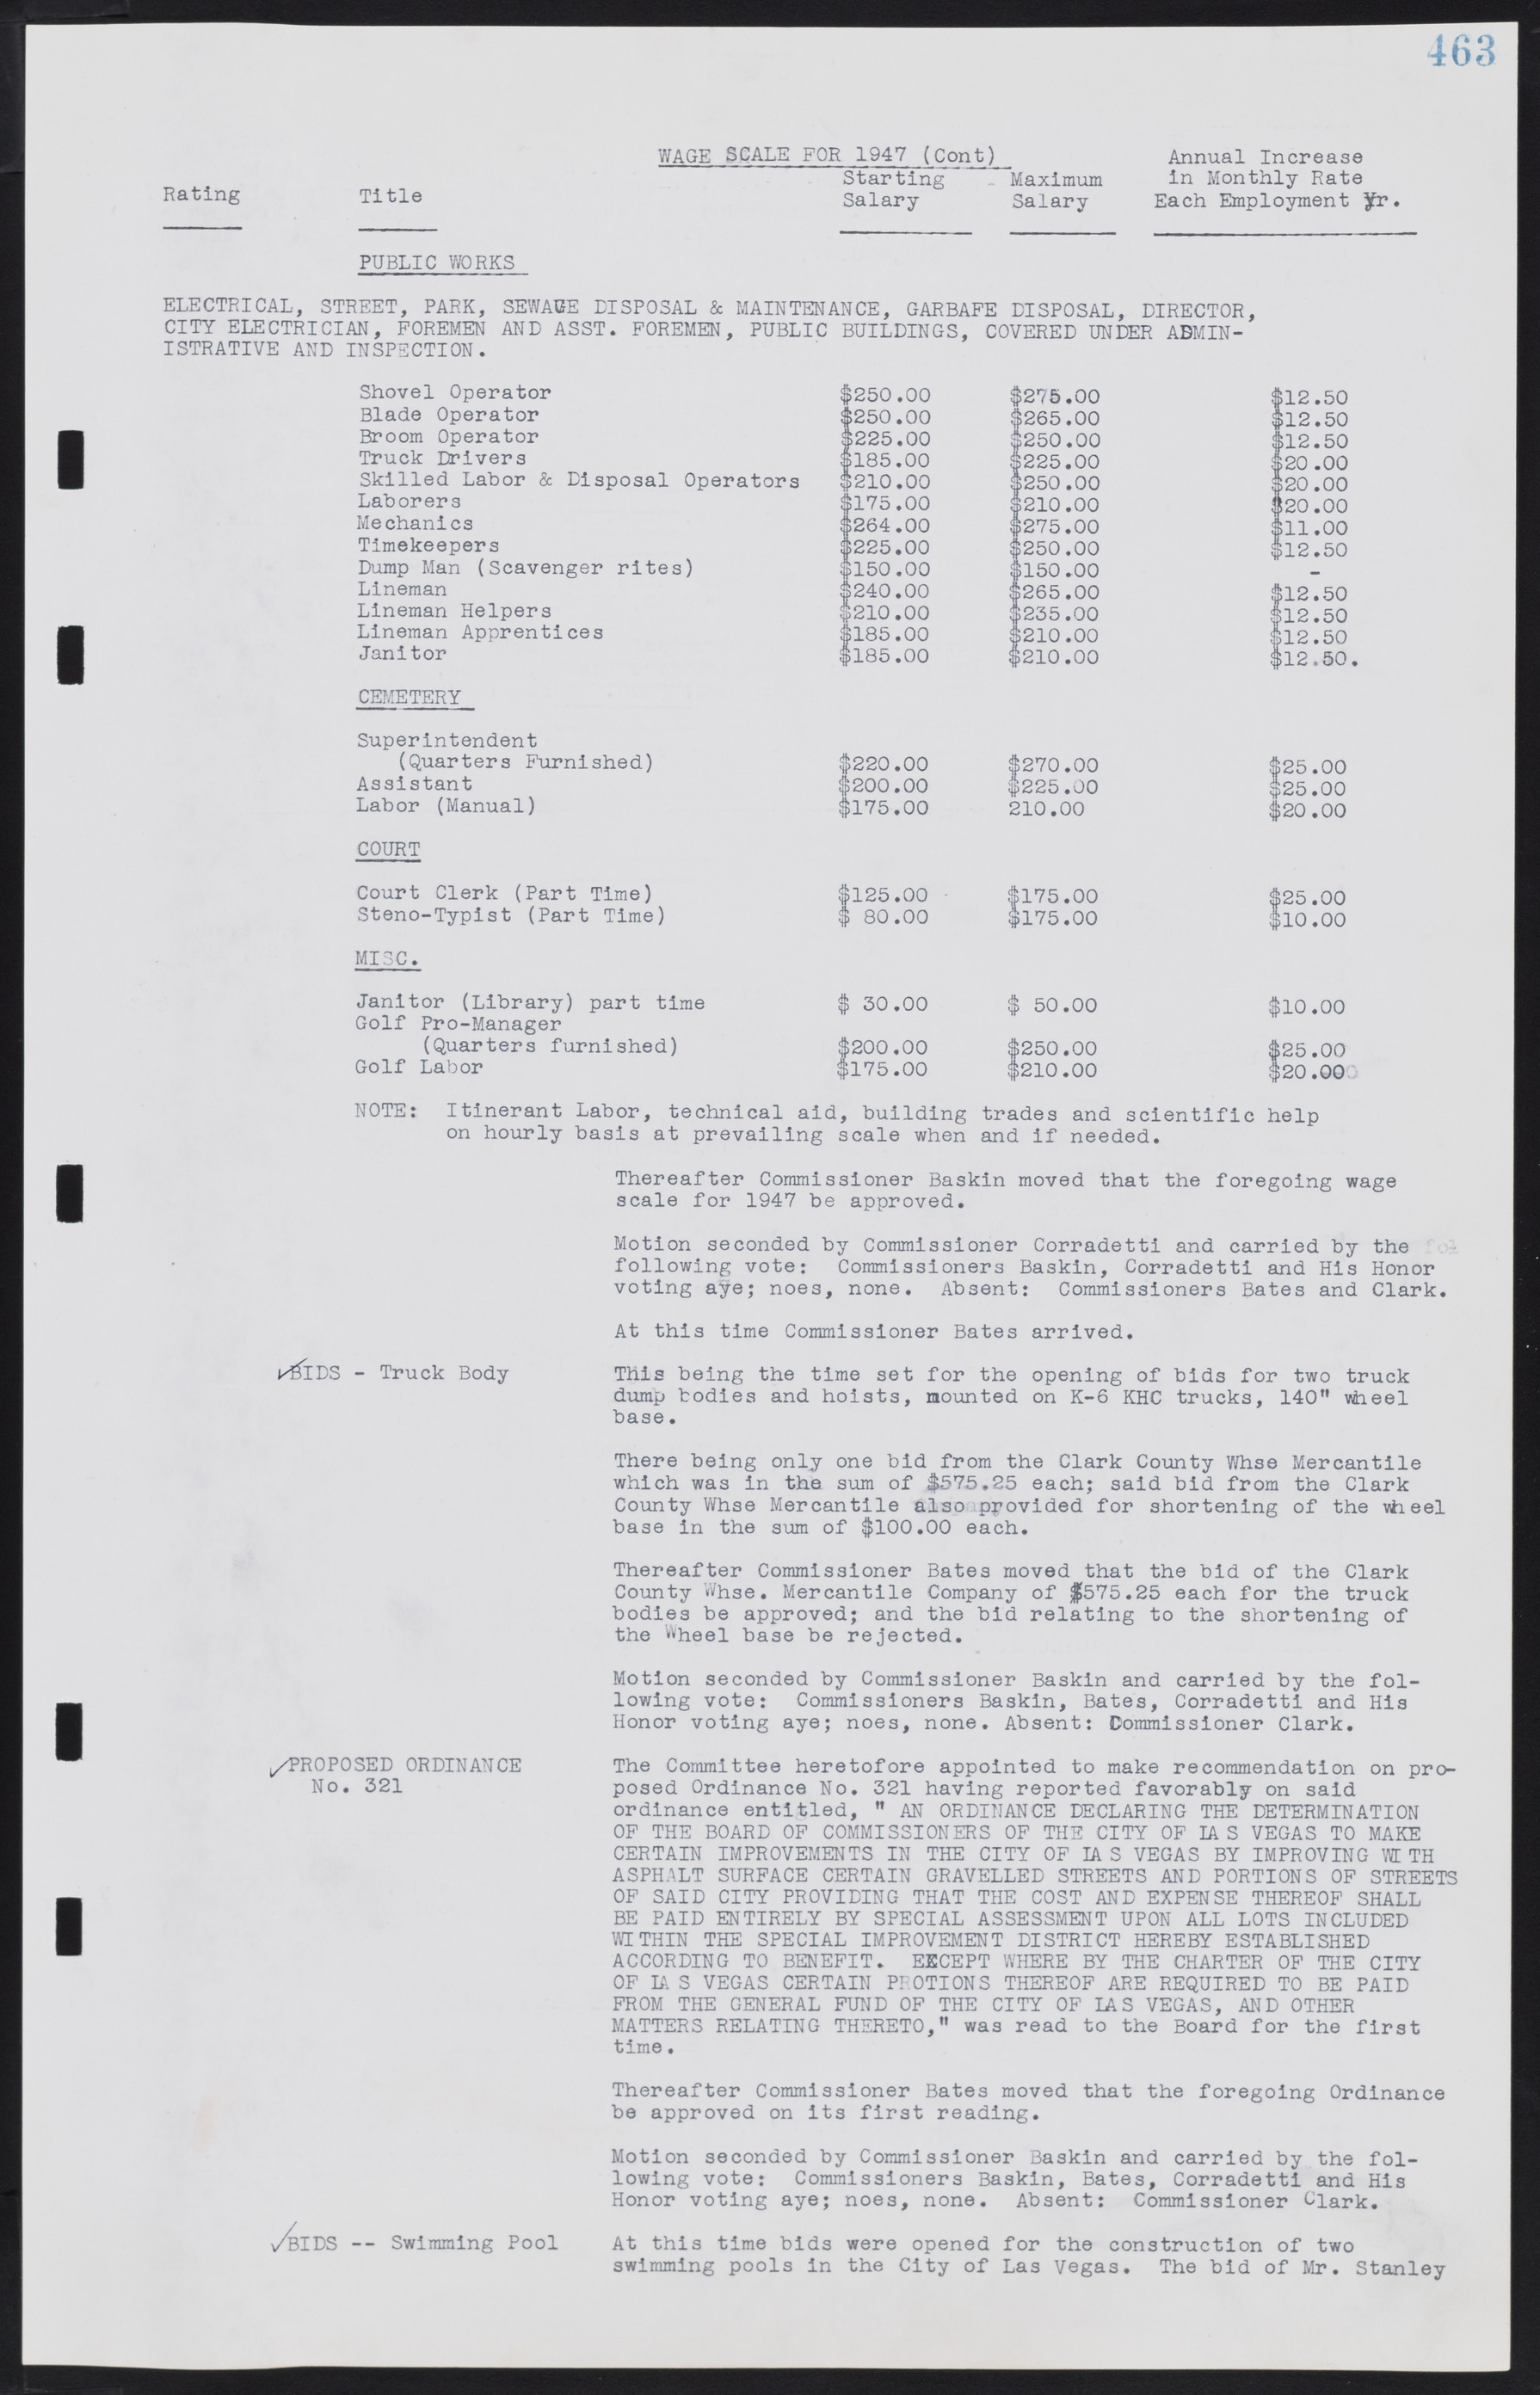 Las Vegas City Commission Minutes, August 11, 1942 to December 30, 1946, lvc000005-494